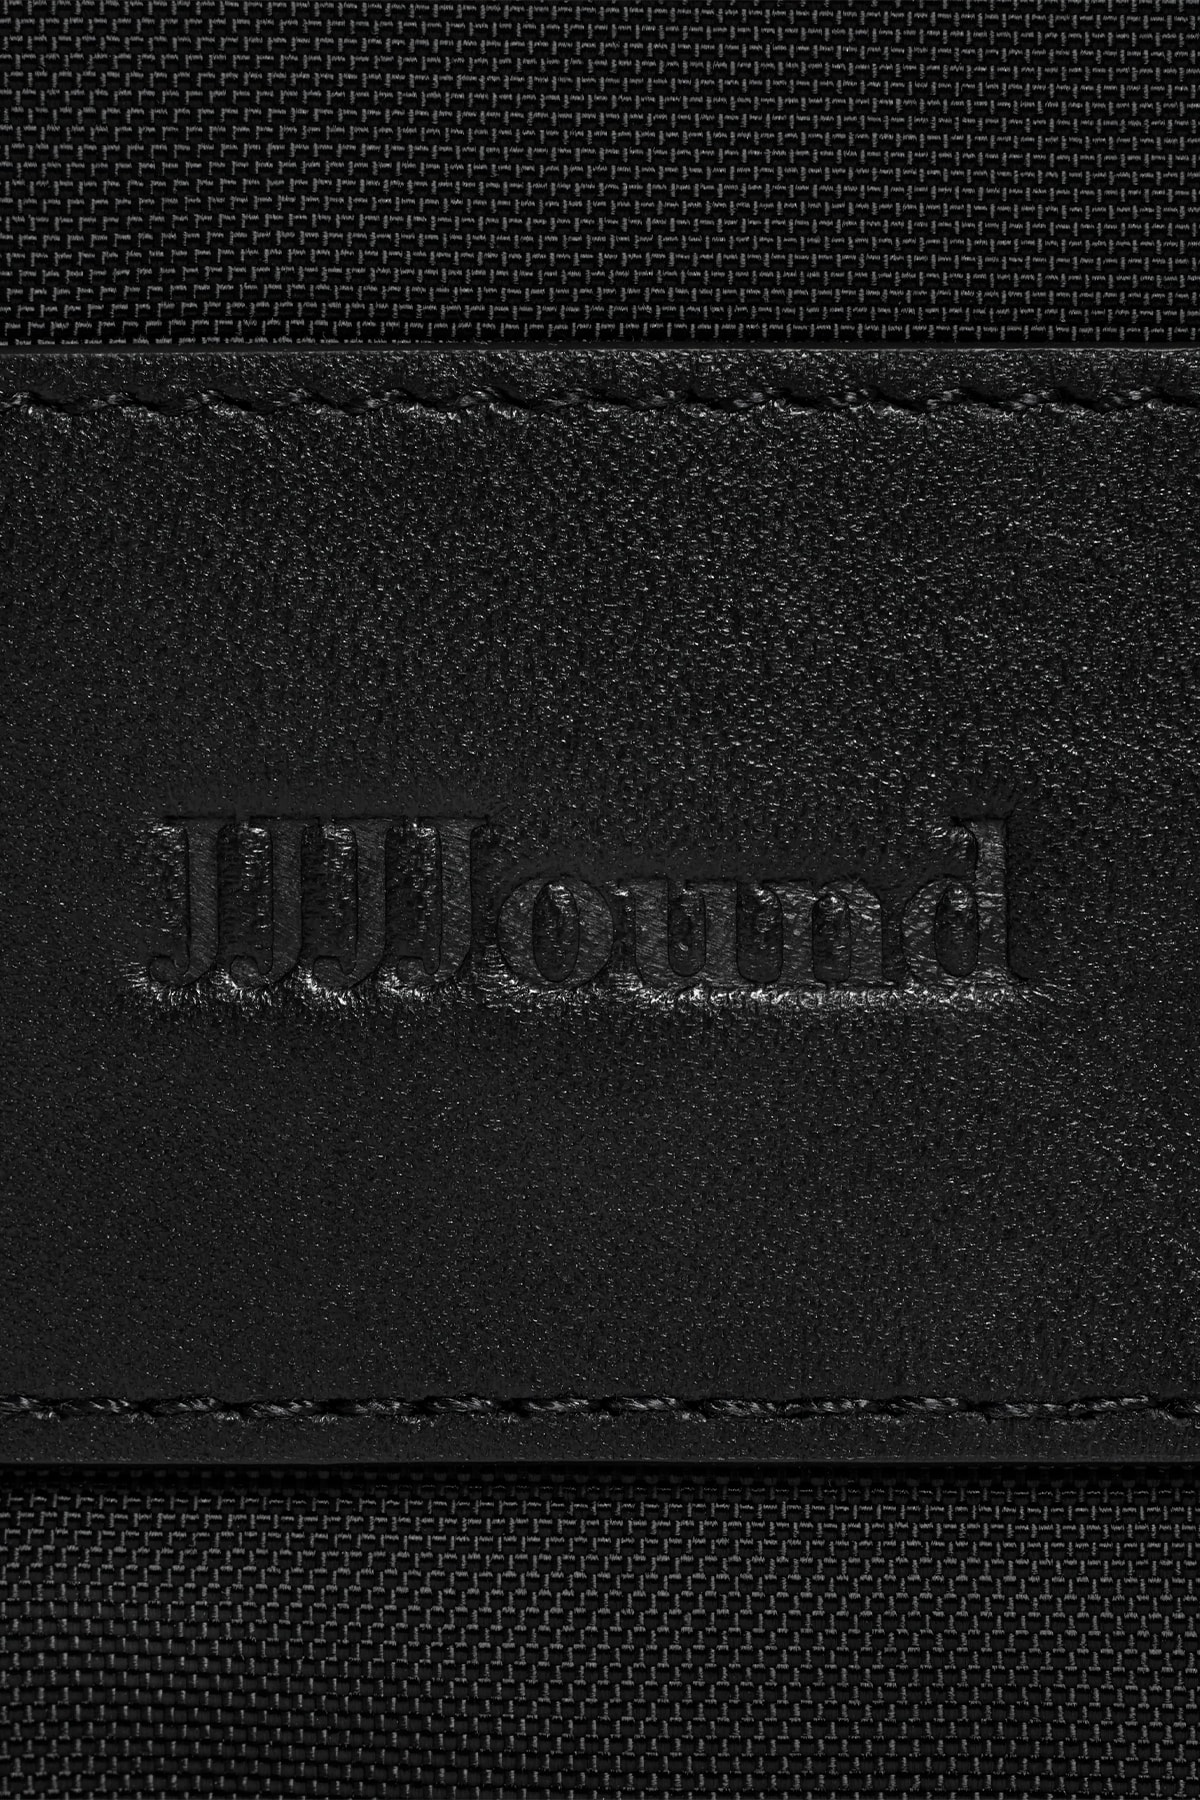 ジョウンド x アディダス オリジナルス サンバ “タバコ”の国内発売情報が解禁 JJJJound x adidas Originals Samba Tobacco release info